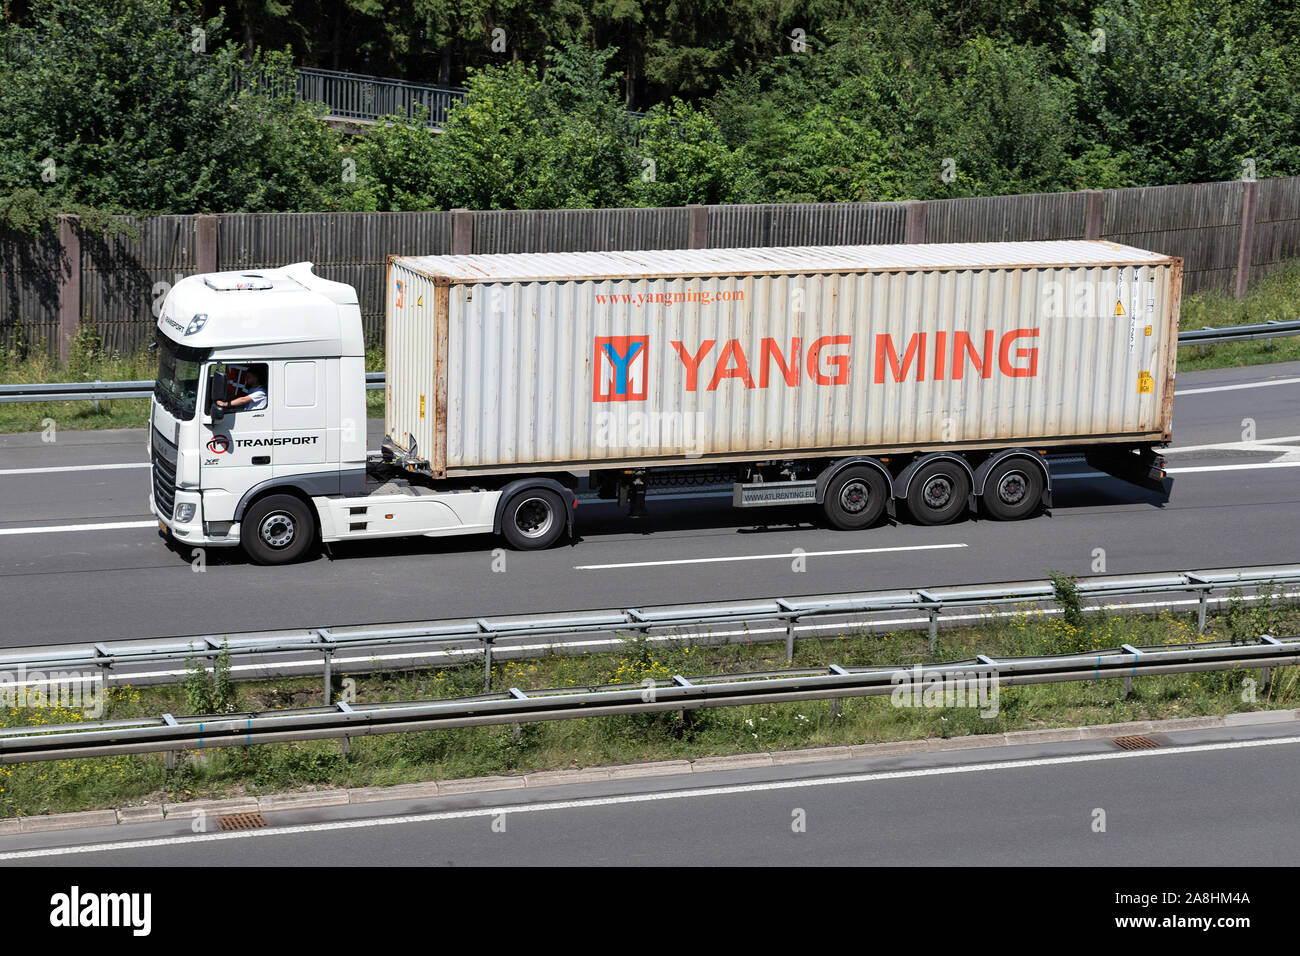 DAF XF carrello con Yang Ming contenitore su autostrada. Foto Stock